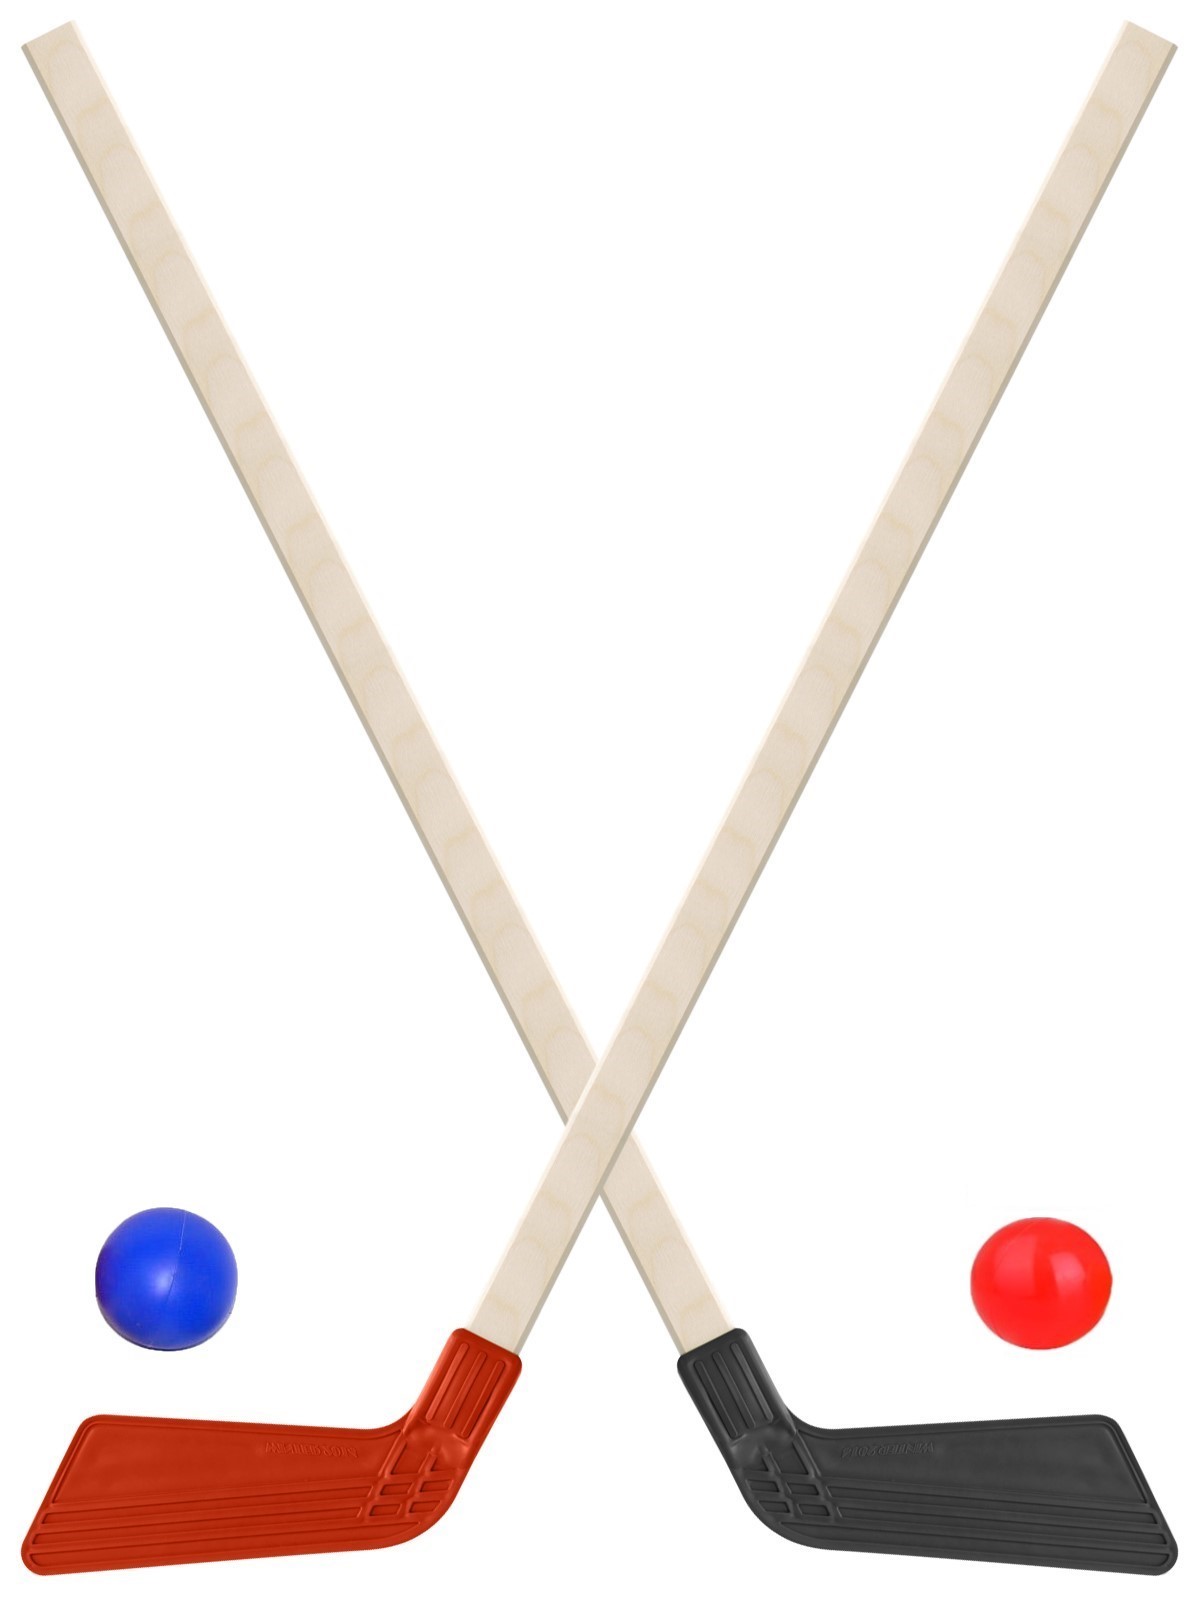 Детский хоккейный набор Задира-плюс  Клюшка хоккейная детская 2шт (черная+красная) +2 мяча